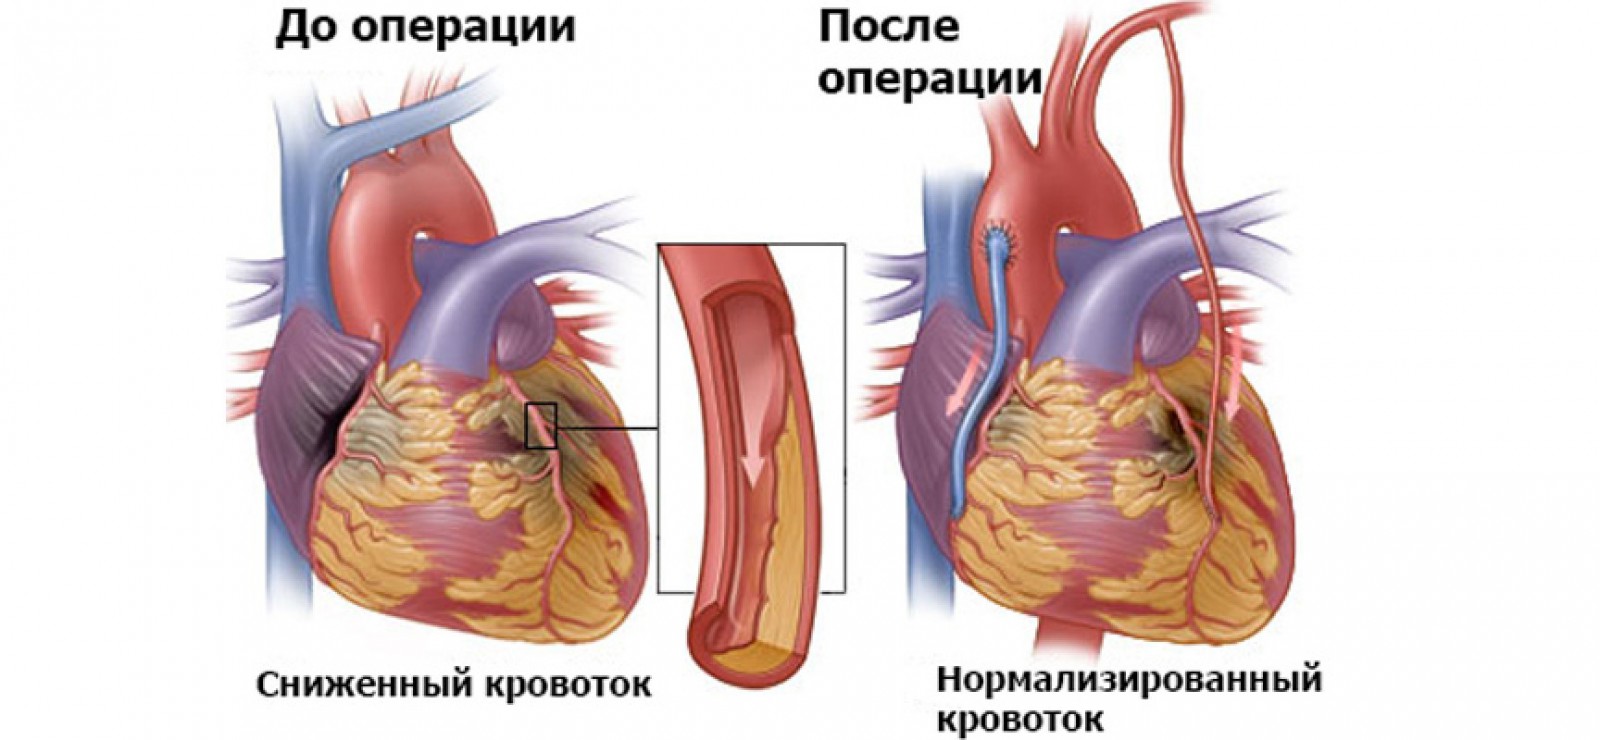 Шунтирование сосудов сердца при заболеваниях